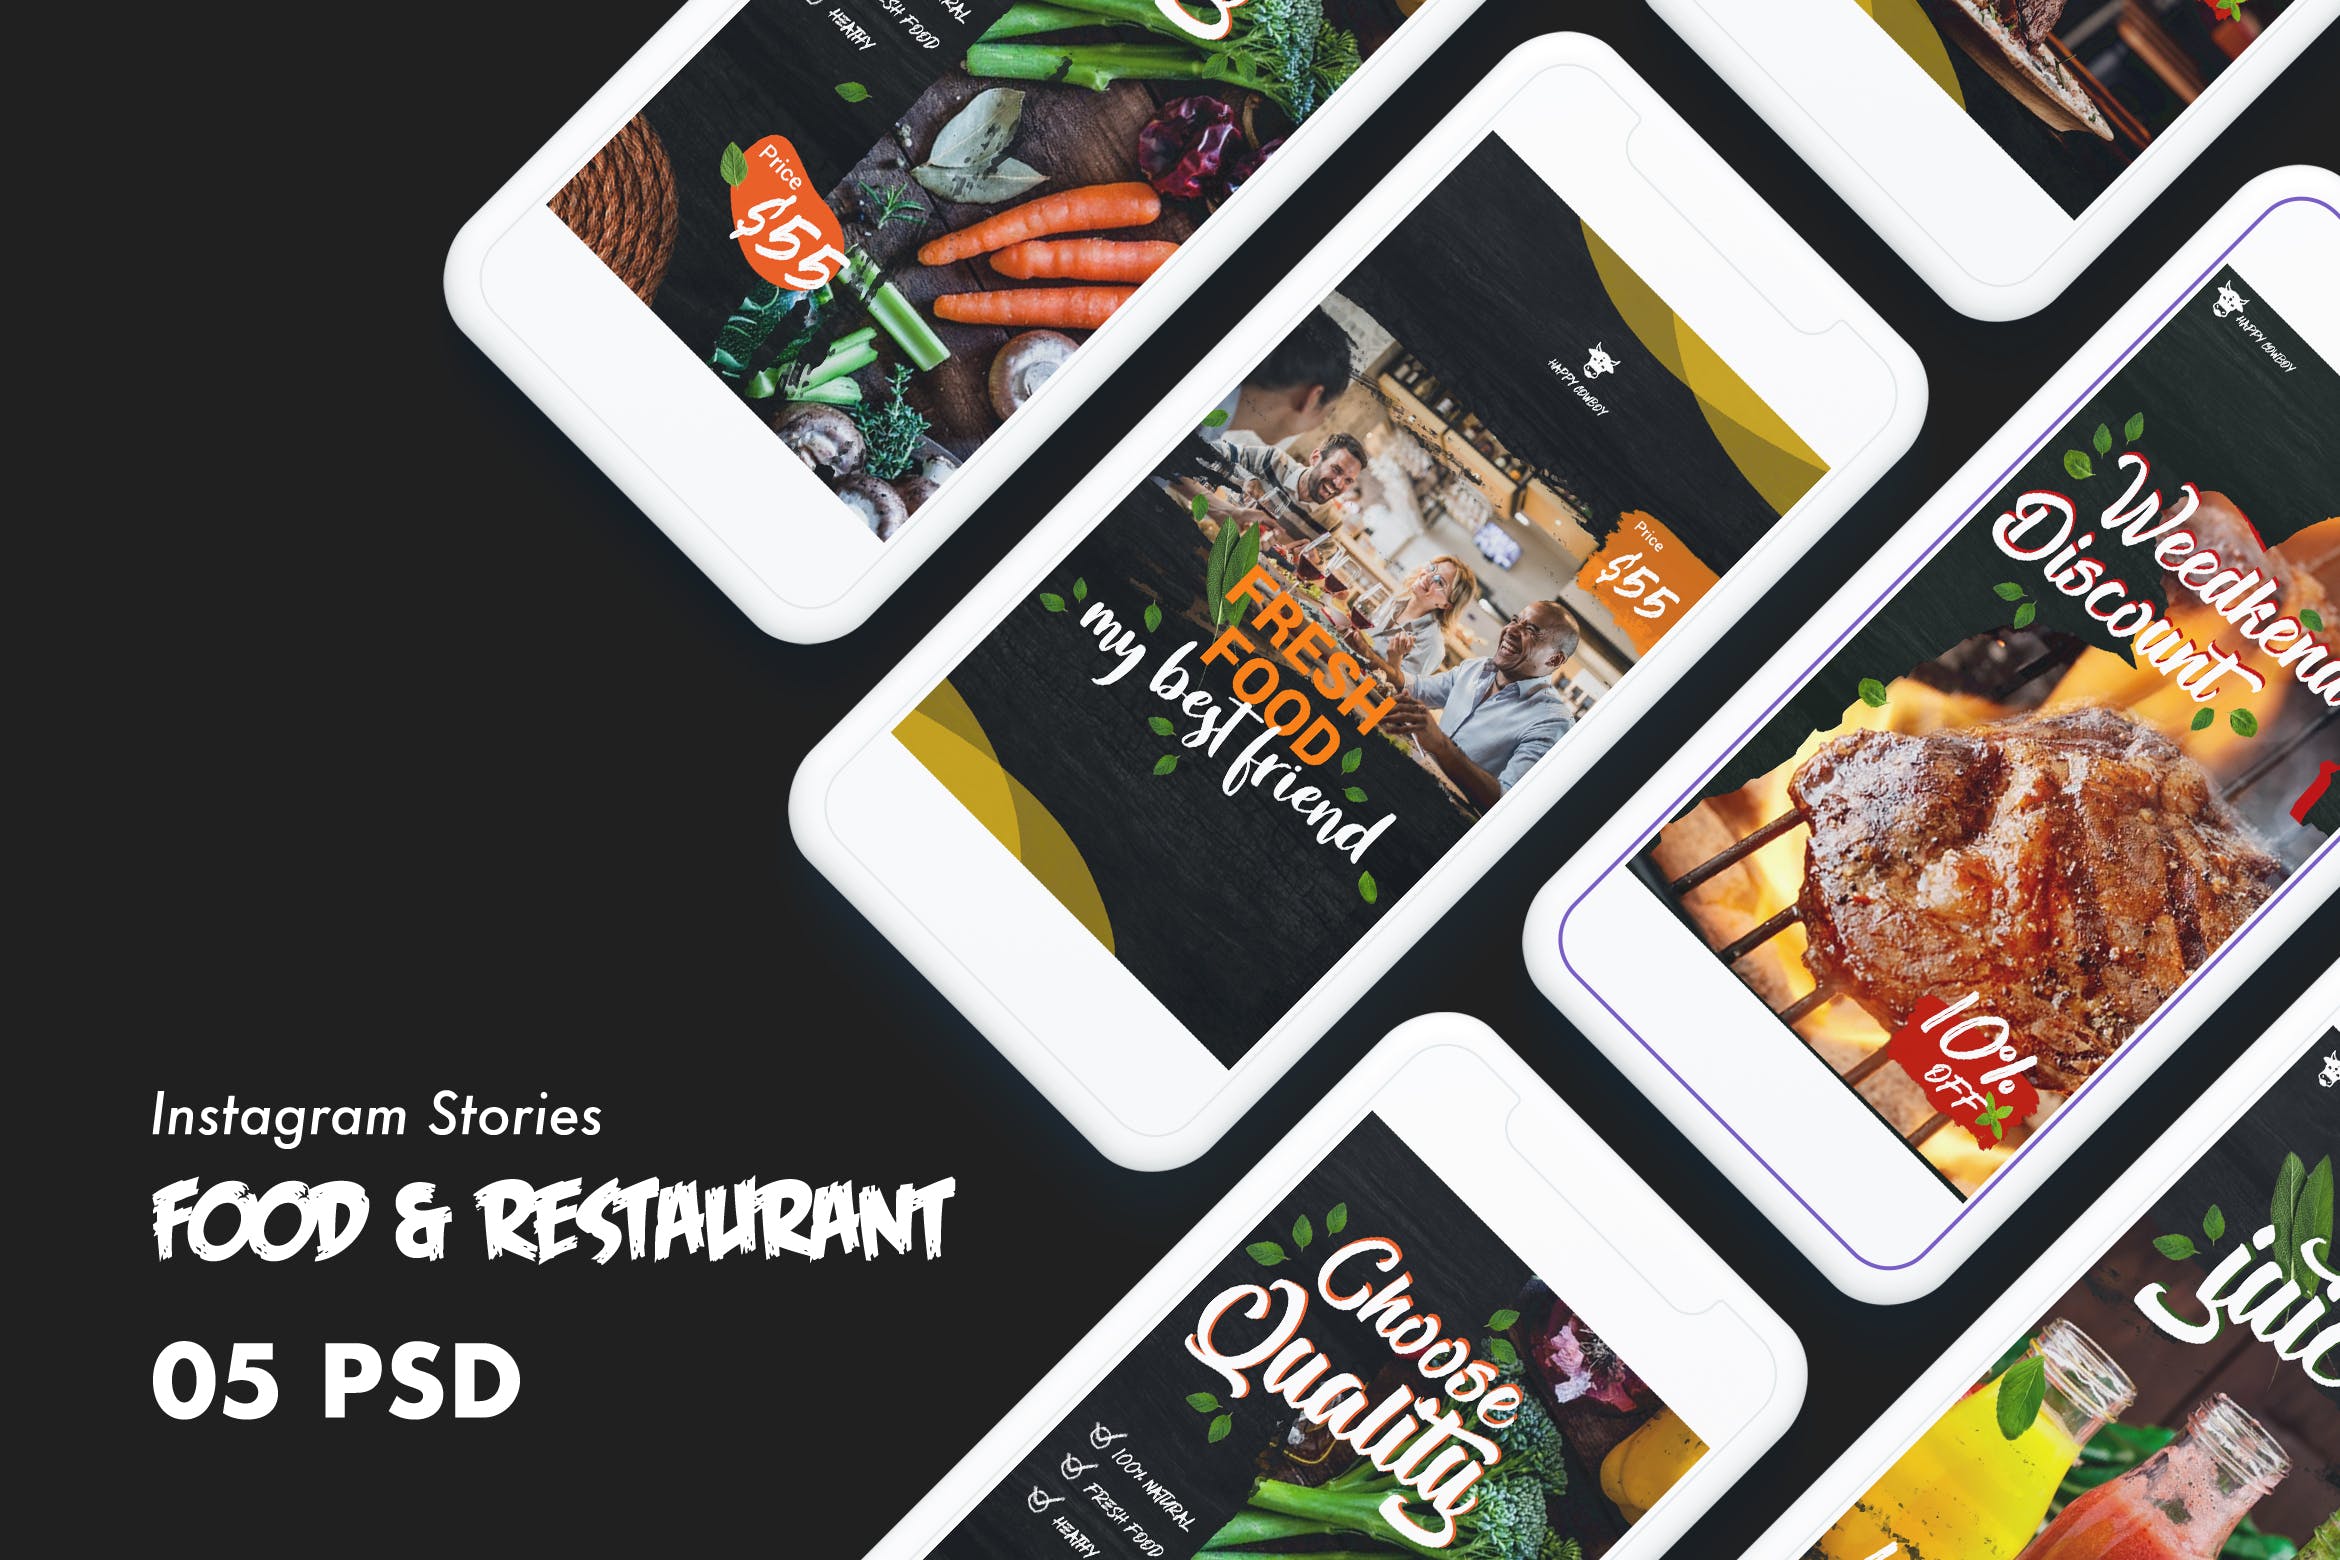 西式美食&餐厅Instagram品牌广告设计PSD模板非凡图库精选 Food & Restaurants Instagram Stories PSD Template插图